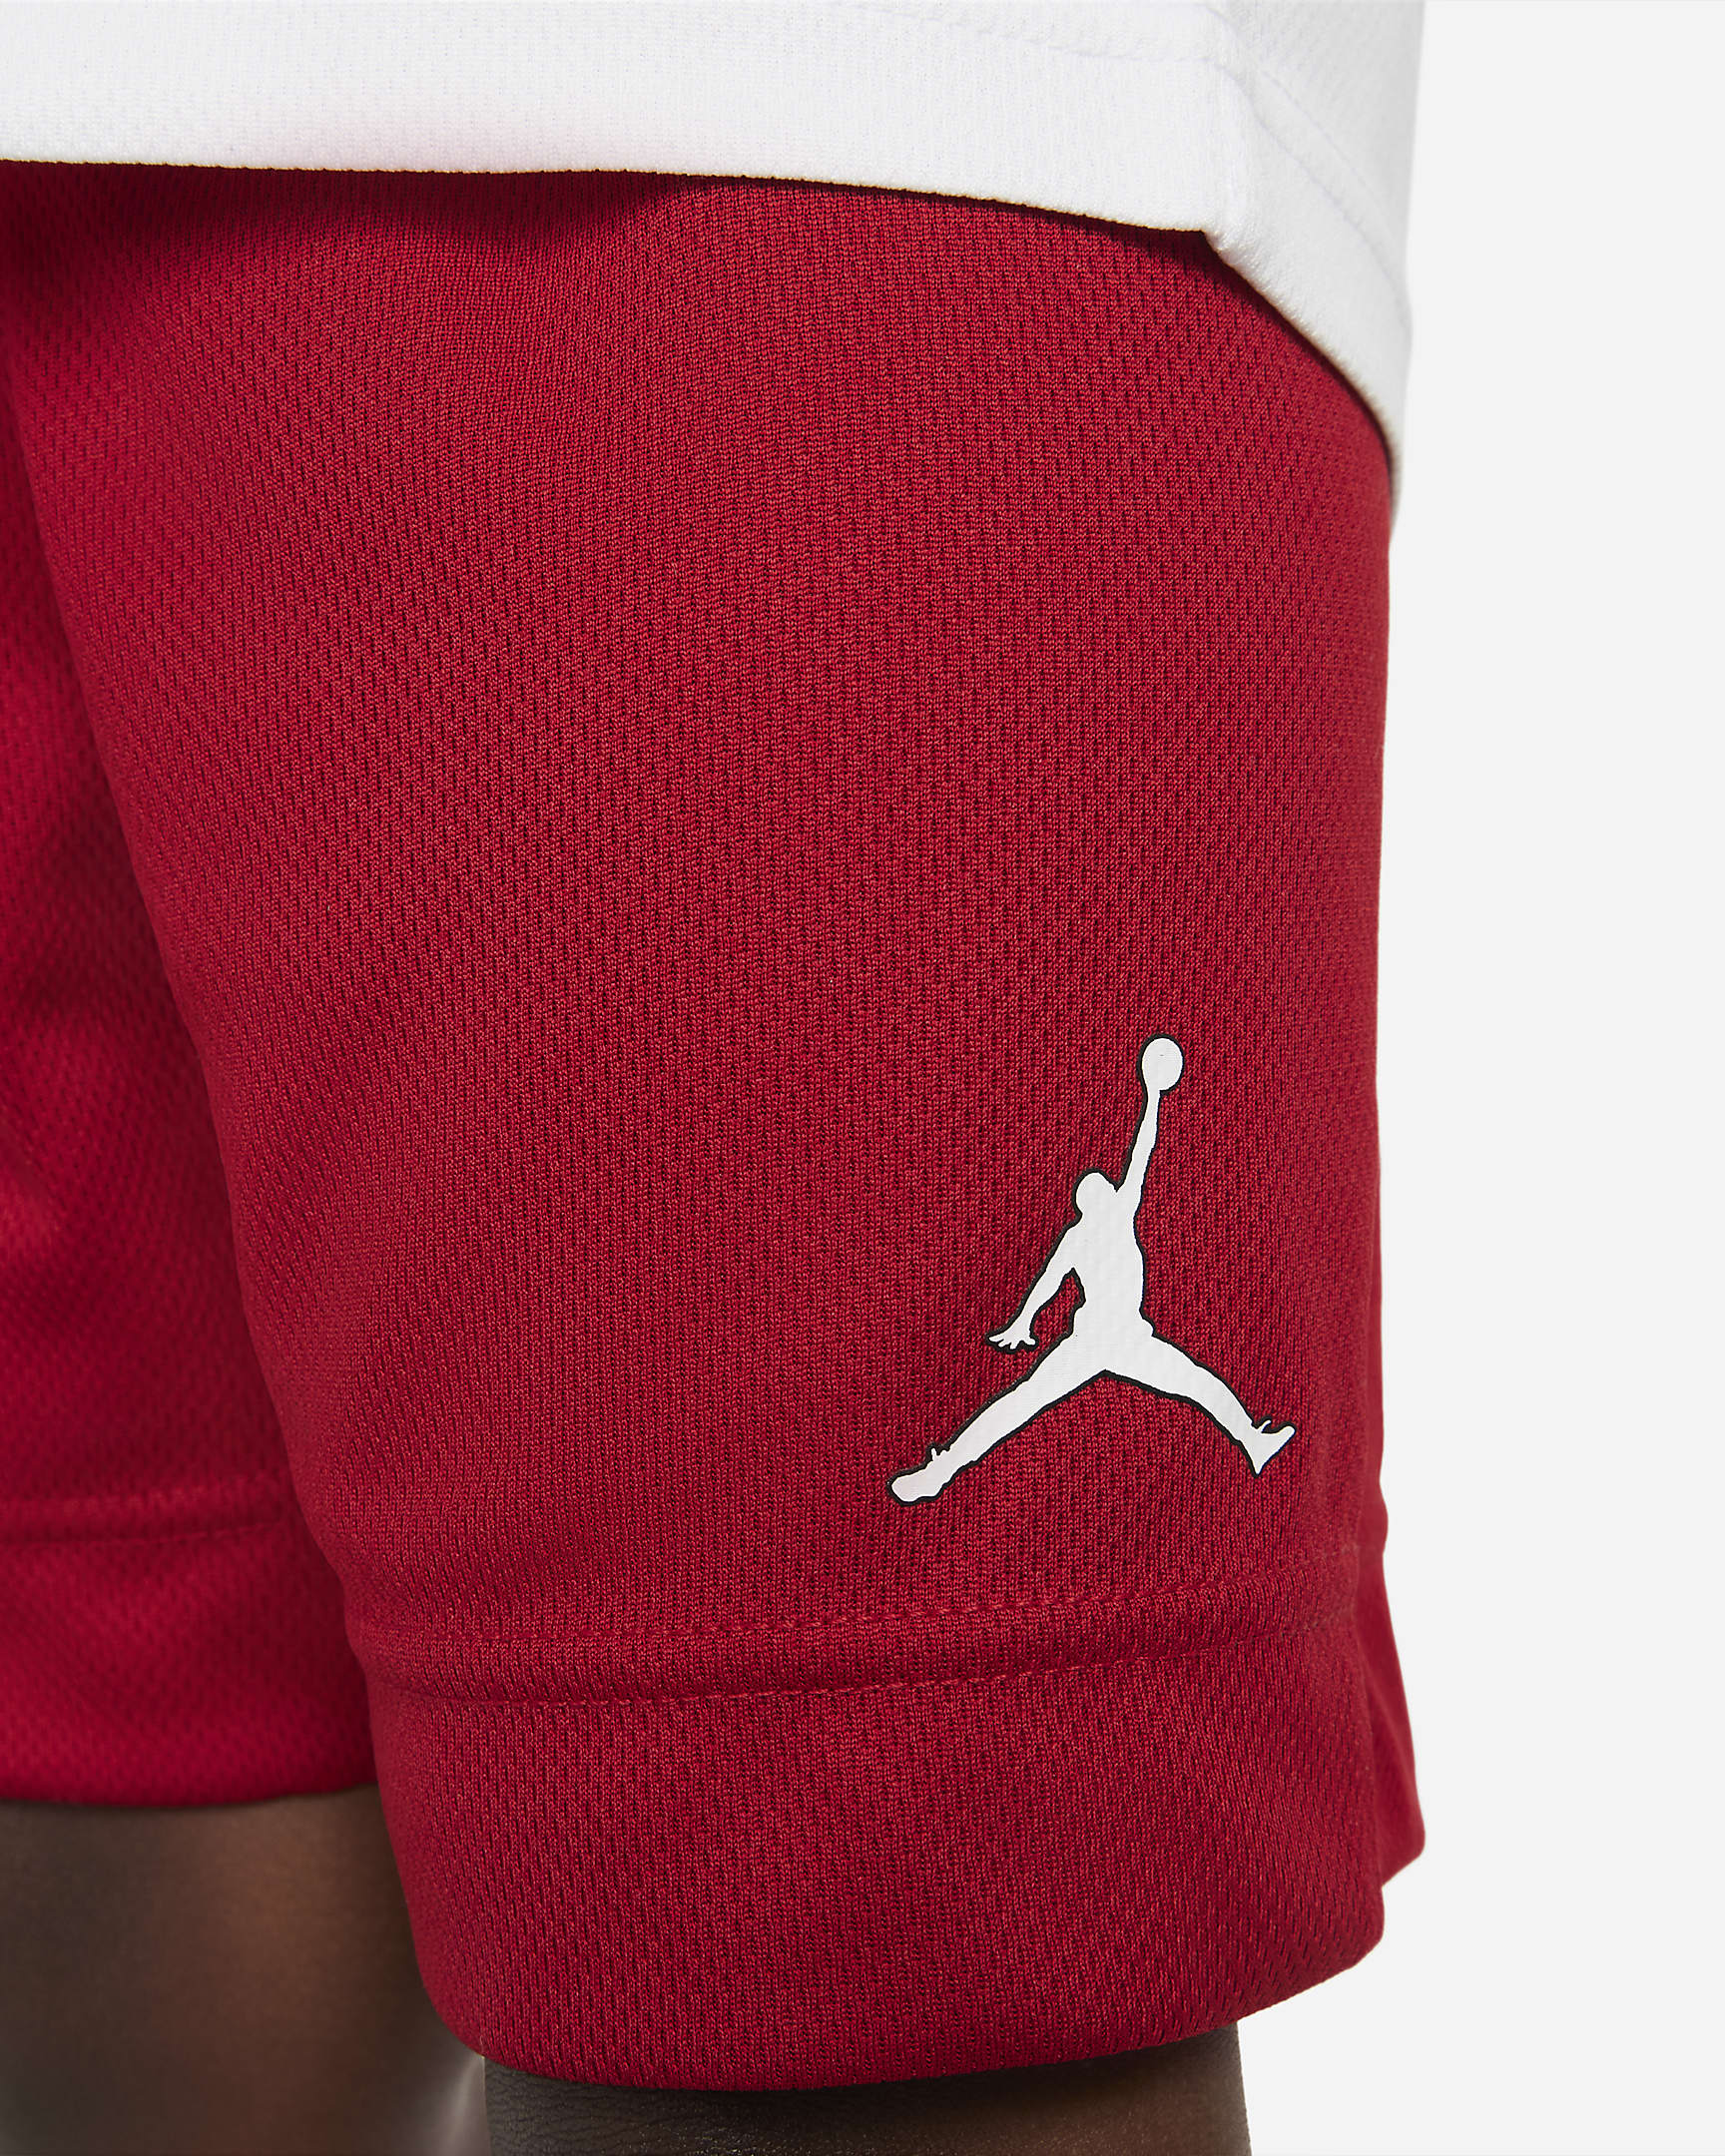 Jordan Toddler Jersey and Shorts Set. Nike.com